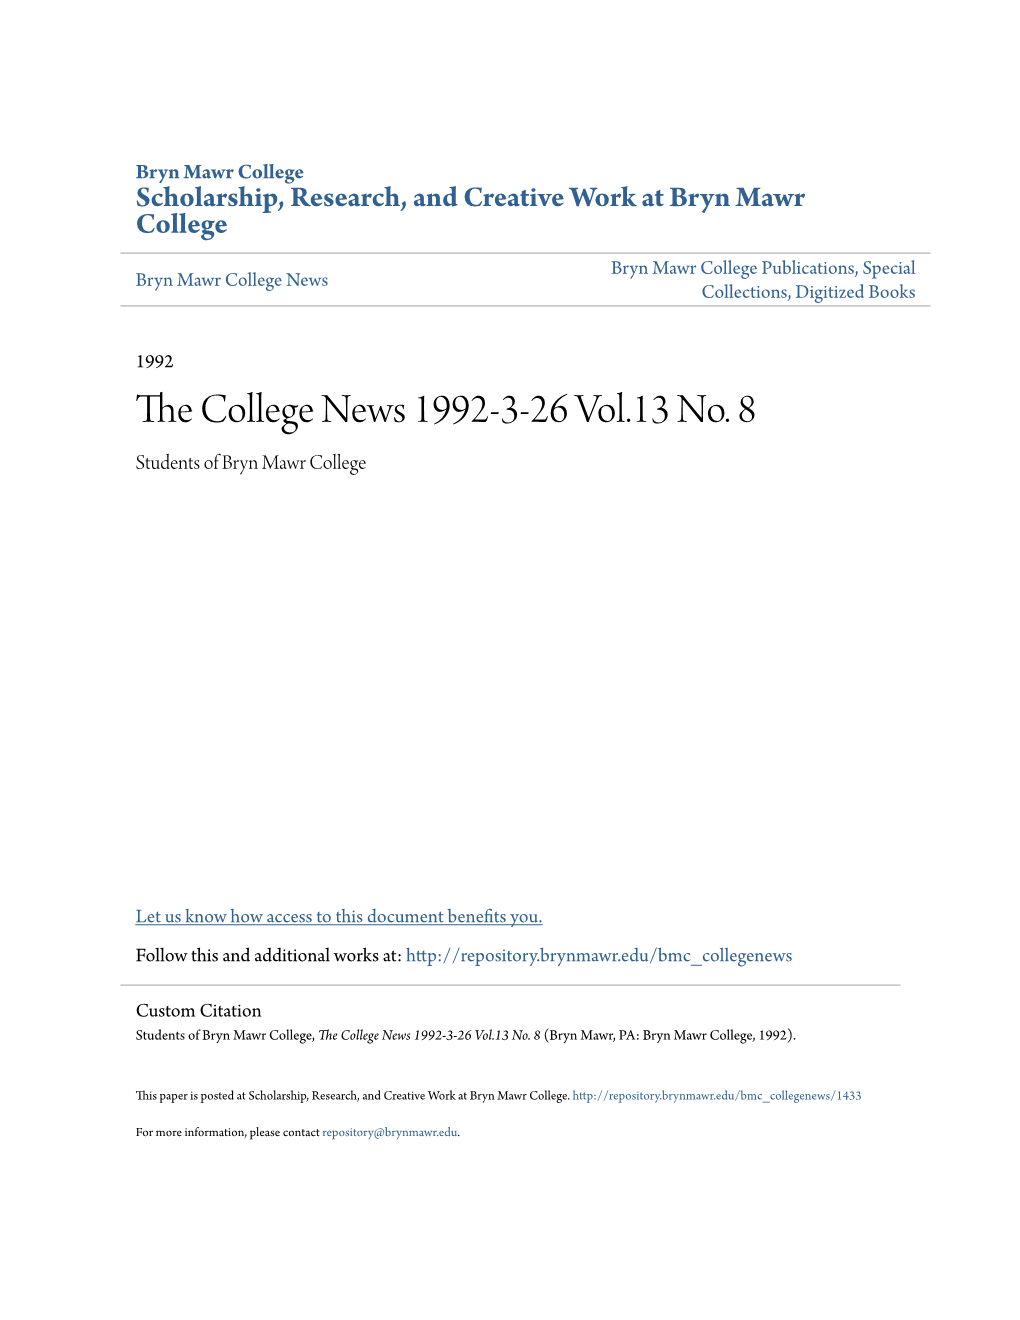 The College News 1992-3-26 Vol.13 No. 8 (Bryn Mawr, PA: Bryn Mawr College, 1992)